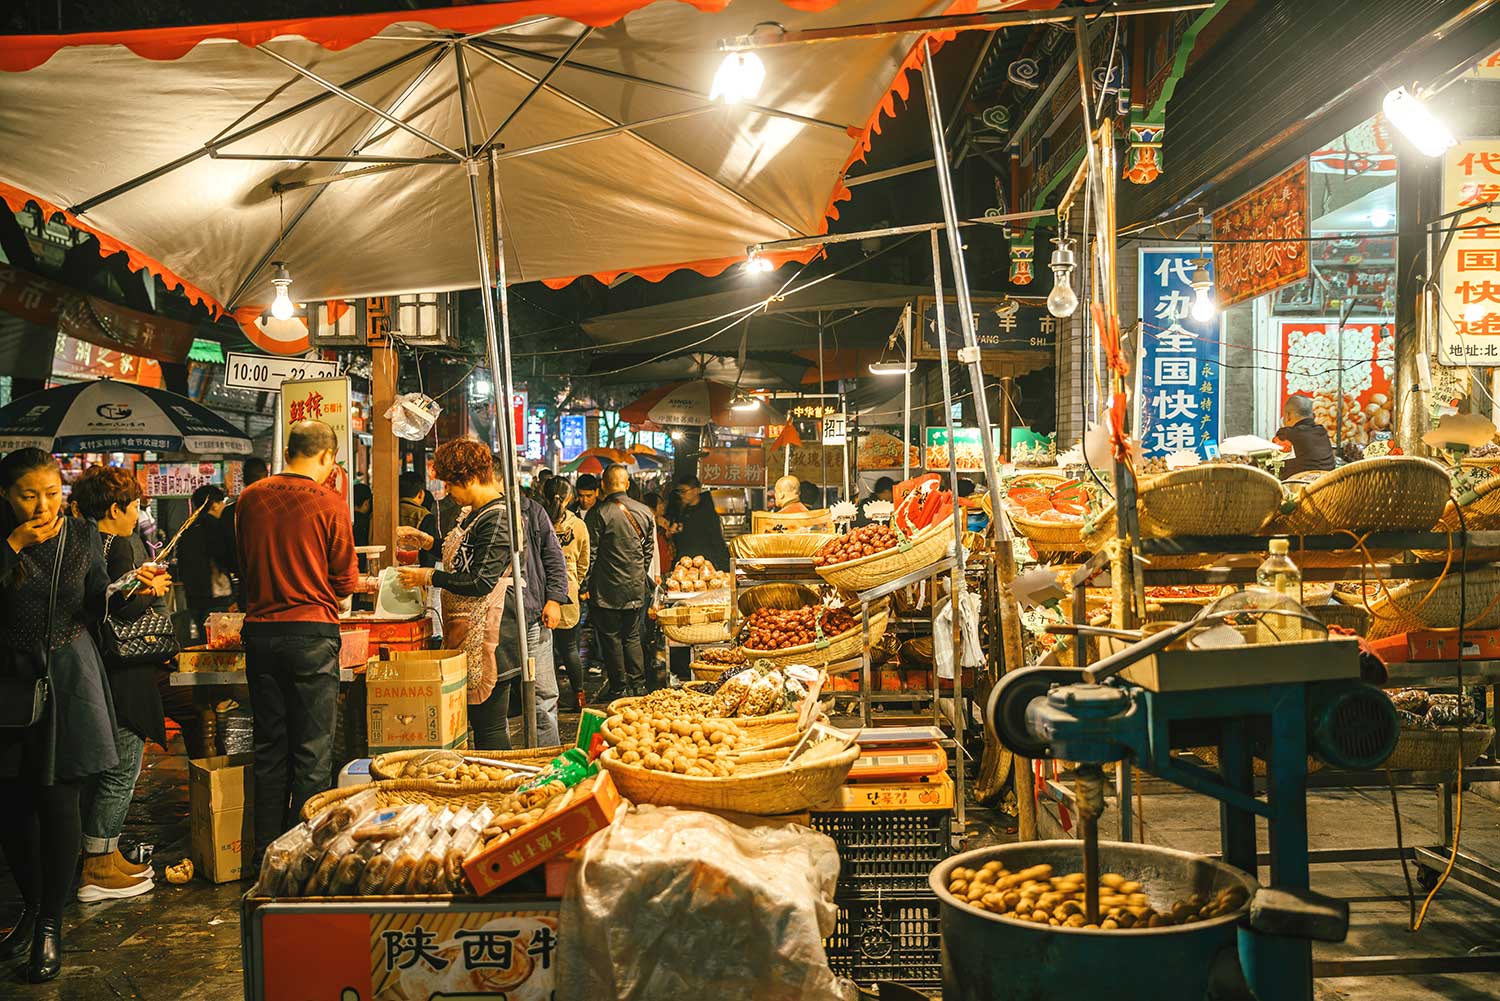 Image de l'article : À la découverte de la street food en Chine - Esprit Pionnier